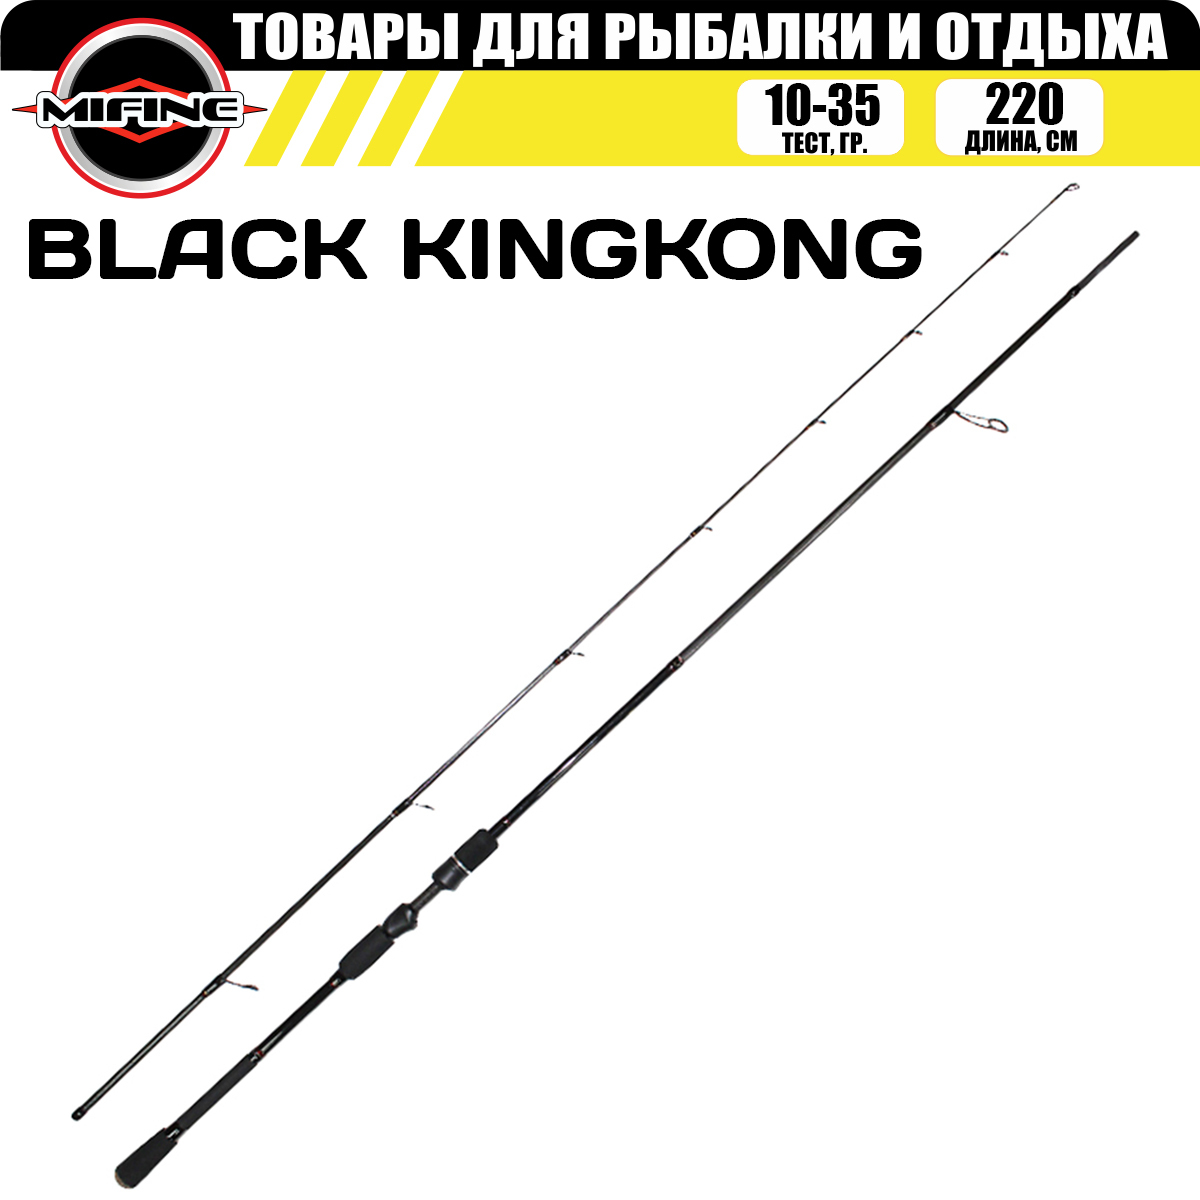 Спиннинг штекерный MIFINE BLACK KINGKONG 2.20м (10-35гр), для рыбалки, рыболовный